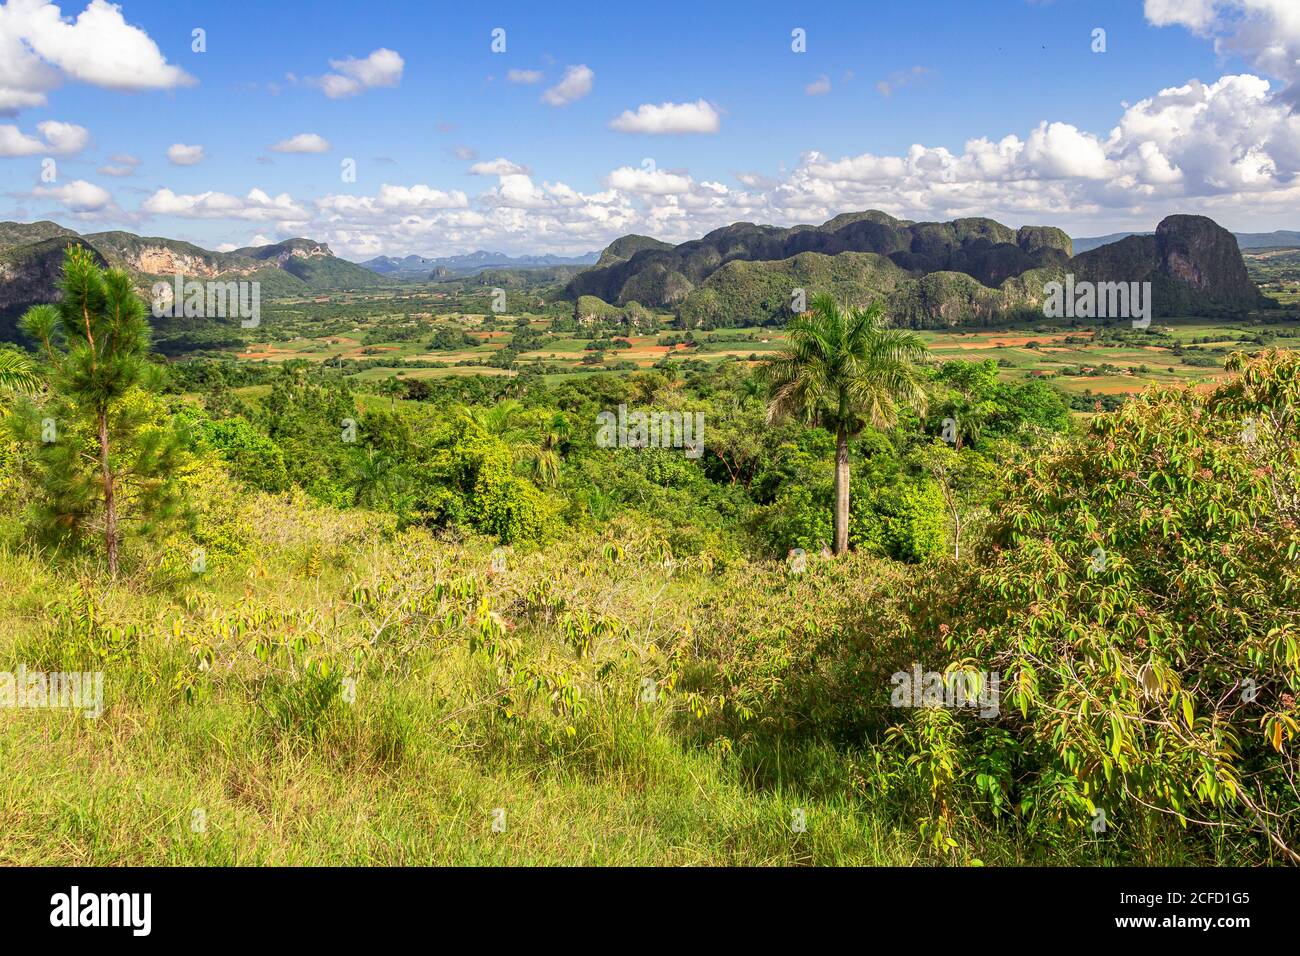 View from the 'Los Aquaticos' viewpoint over the Vinales valley ('Valle de Vinales'), Pinar del Rio province, Cuba Stock Photo